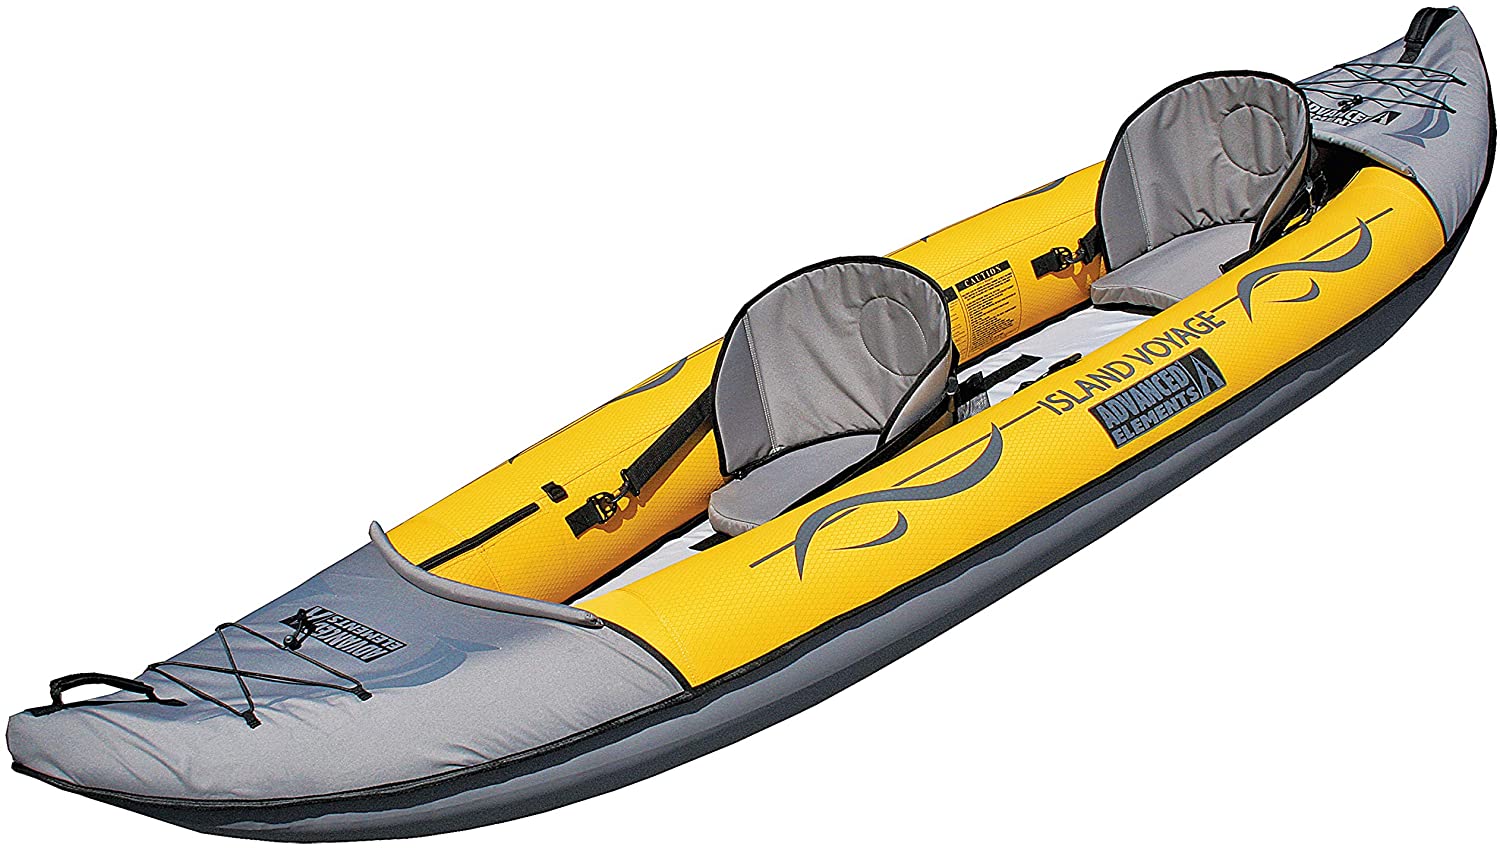 ADVANCED ELEMENTS Island Voyage 2 Inflatable Kayak